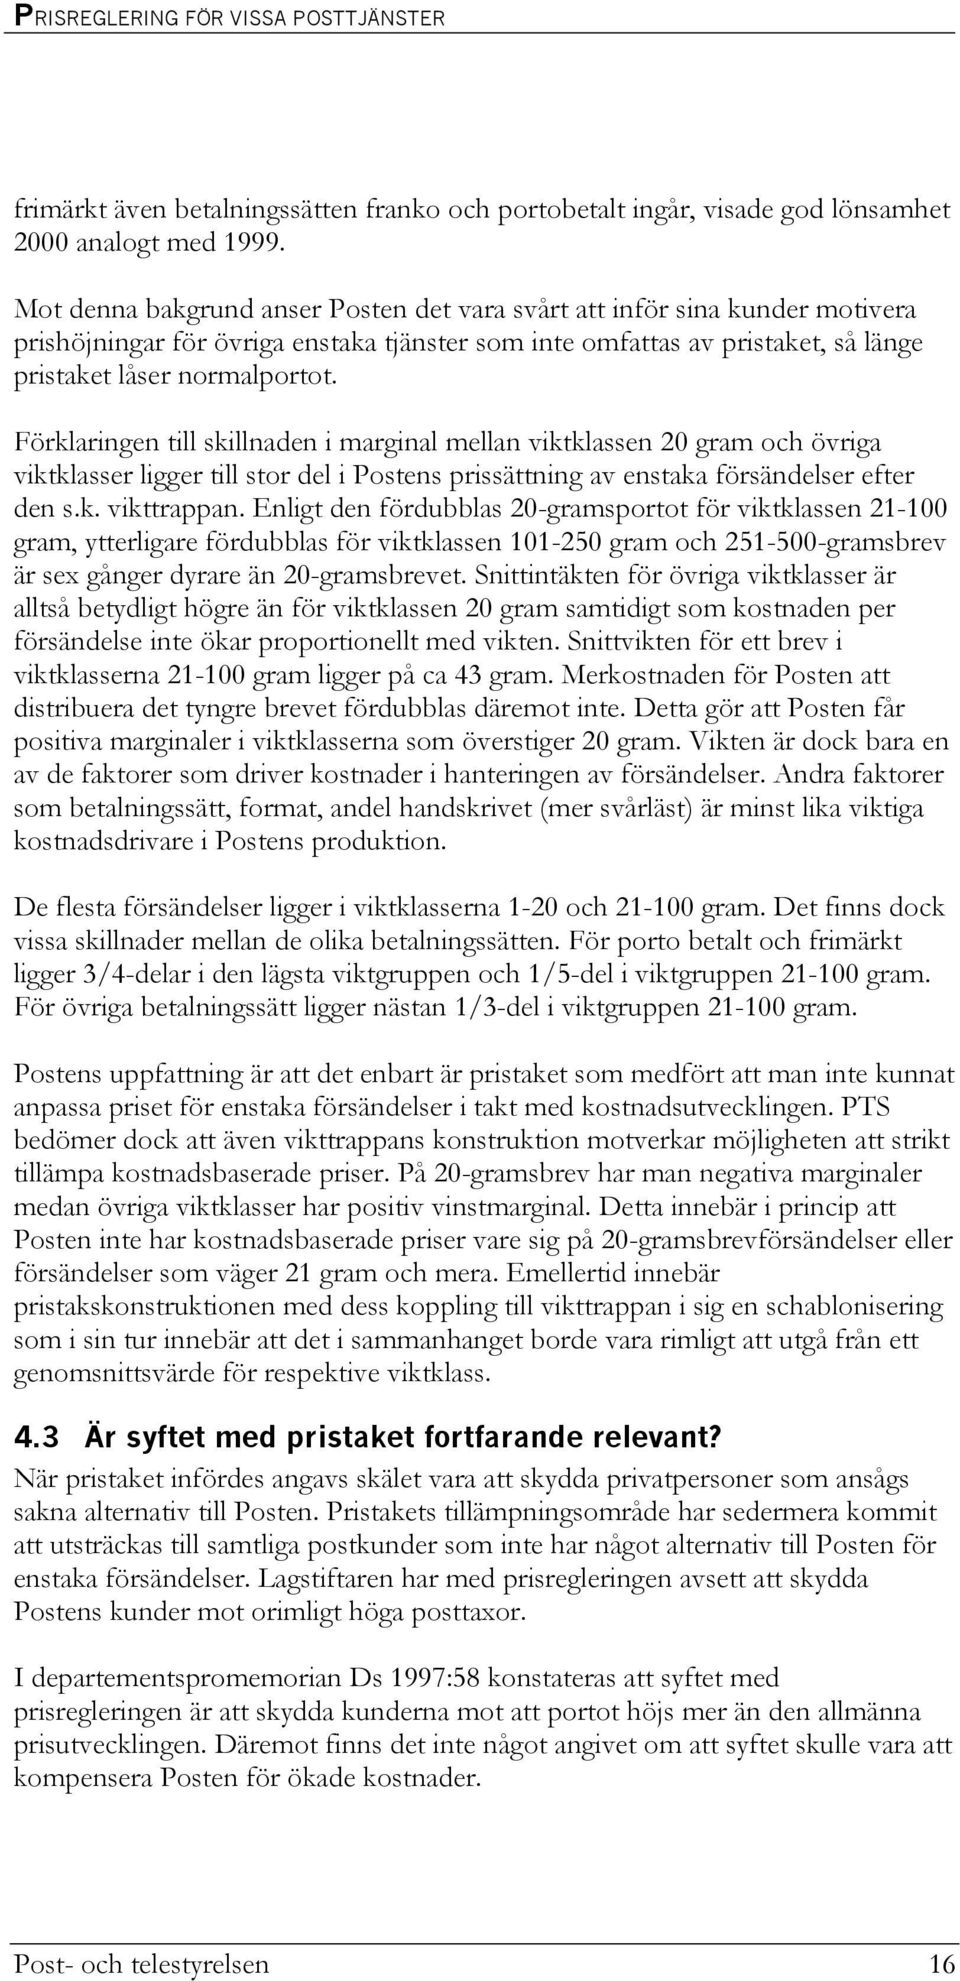 Förklaringen till skillnaden i marginal mellan viktklassen 20 gram och övriga viktklasser ligger till stor del i Postens prissättning av enstaka försändelser efter den s.k. vikttrappan.